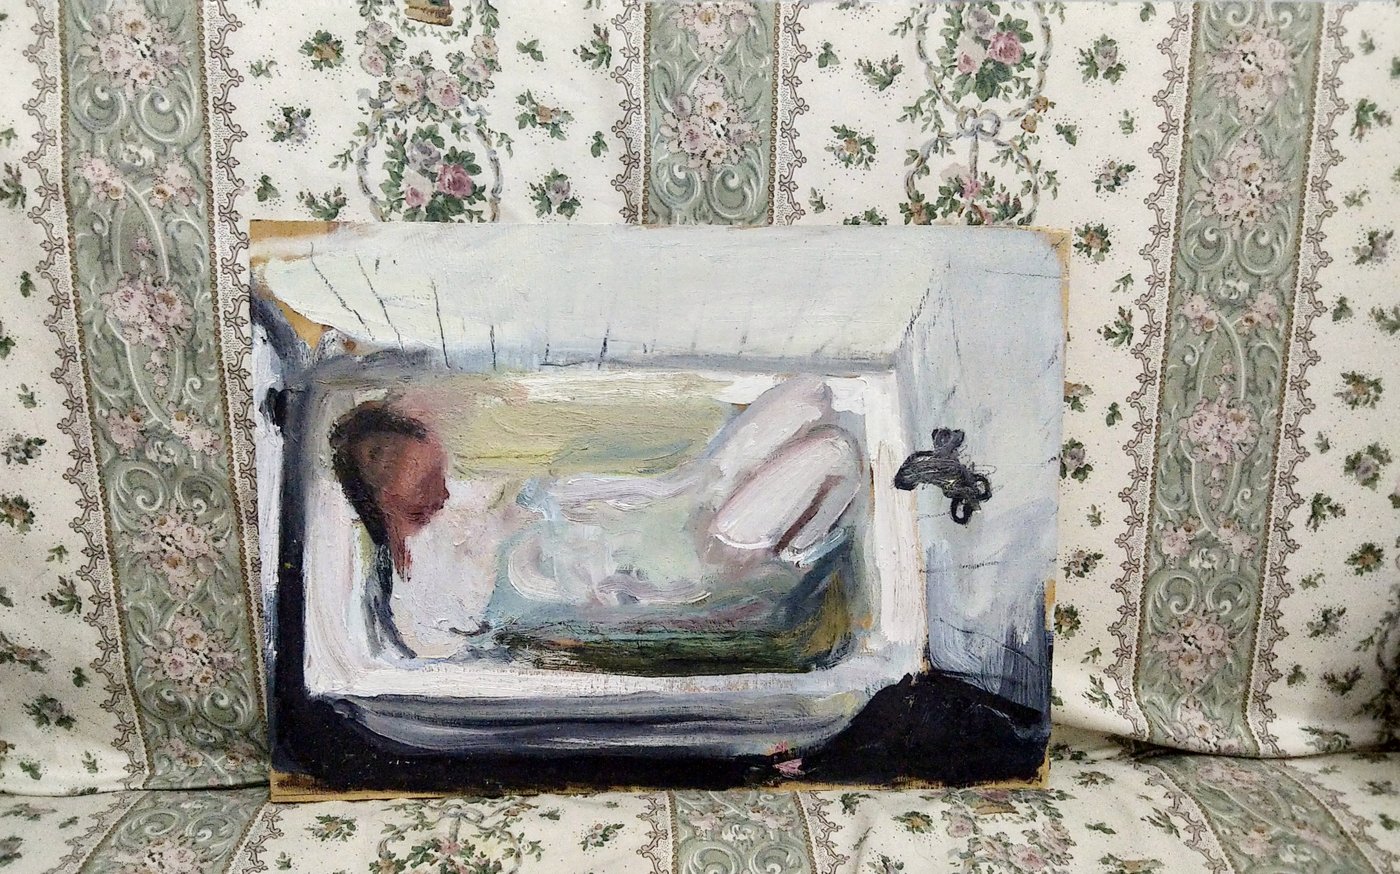 Gemälde einer badenden Person das auf einer mit Blumenmuster überzogenen Couch lehnt